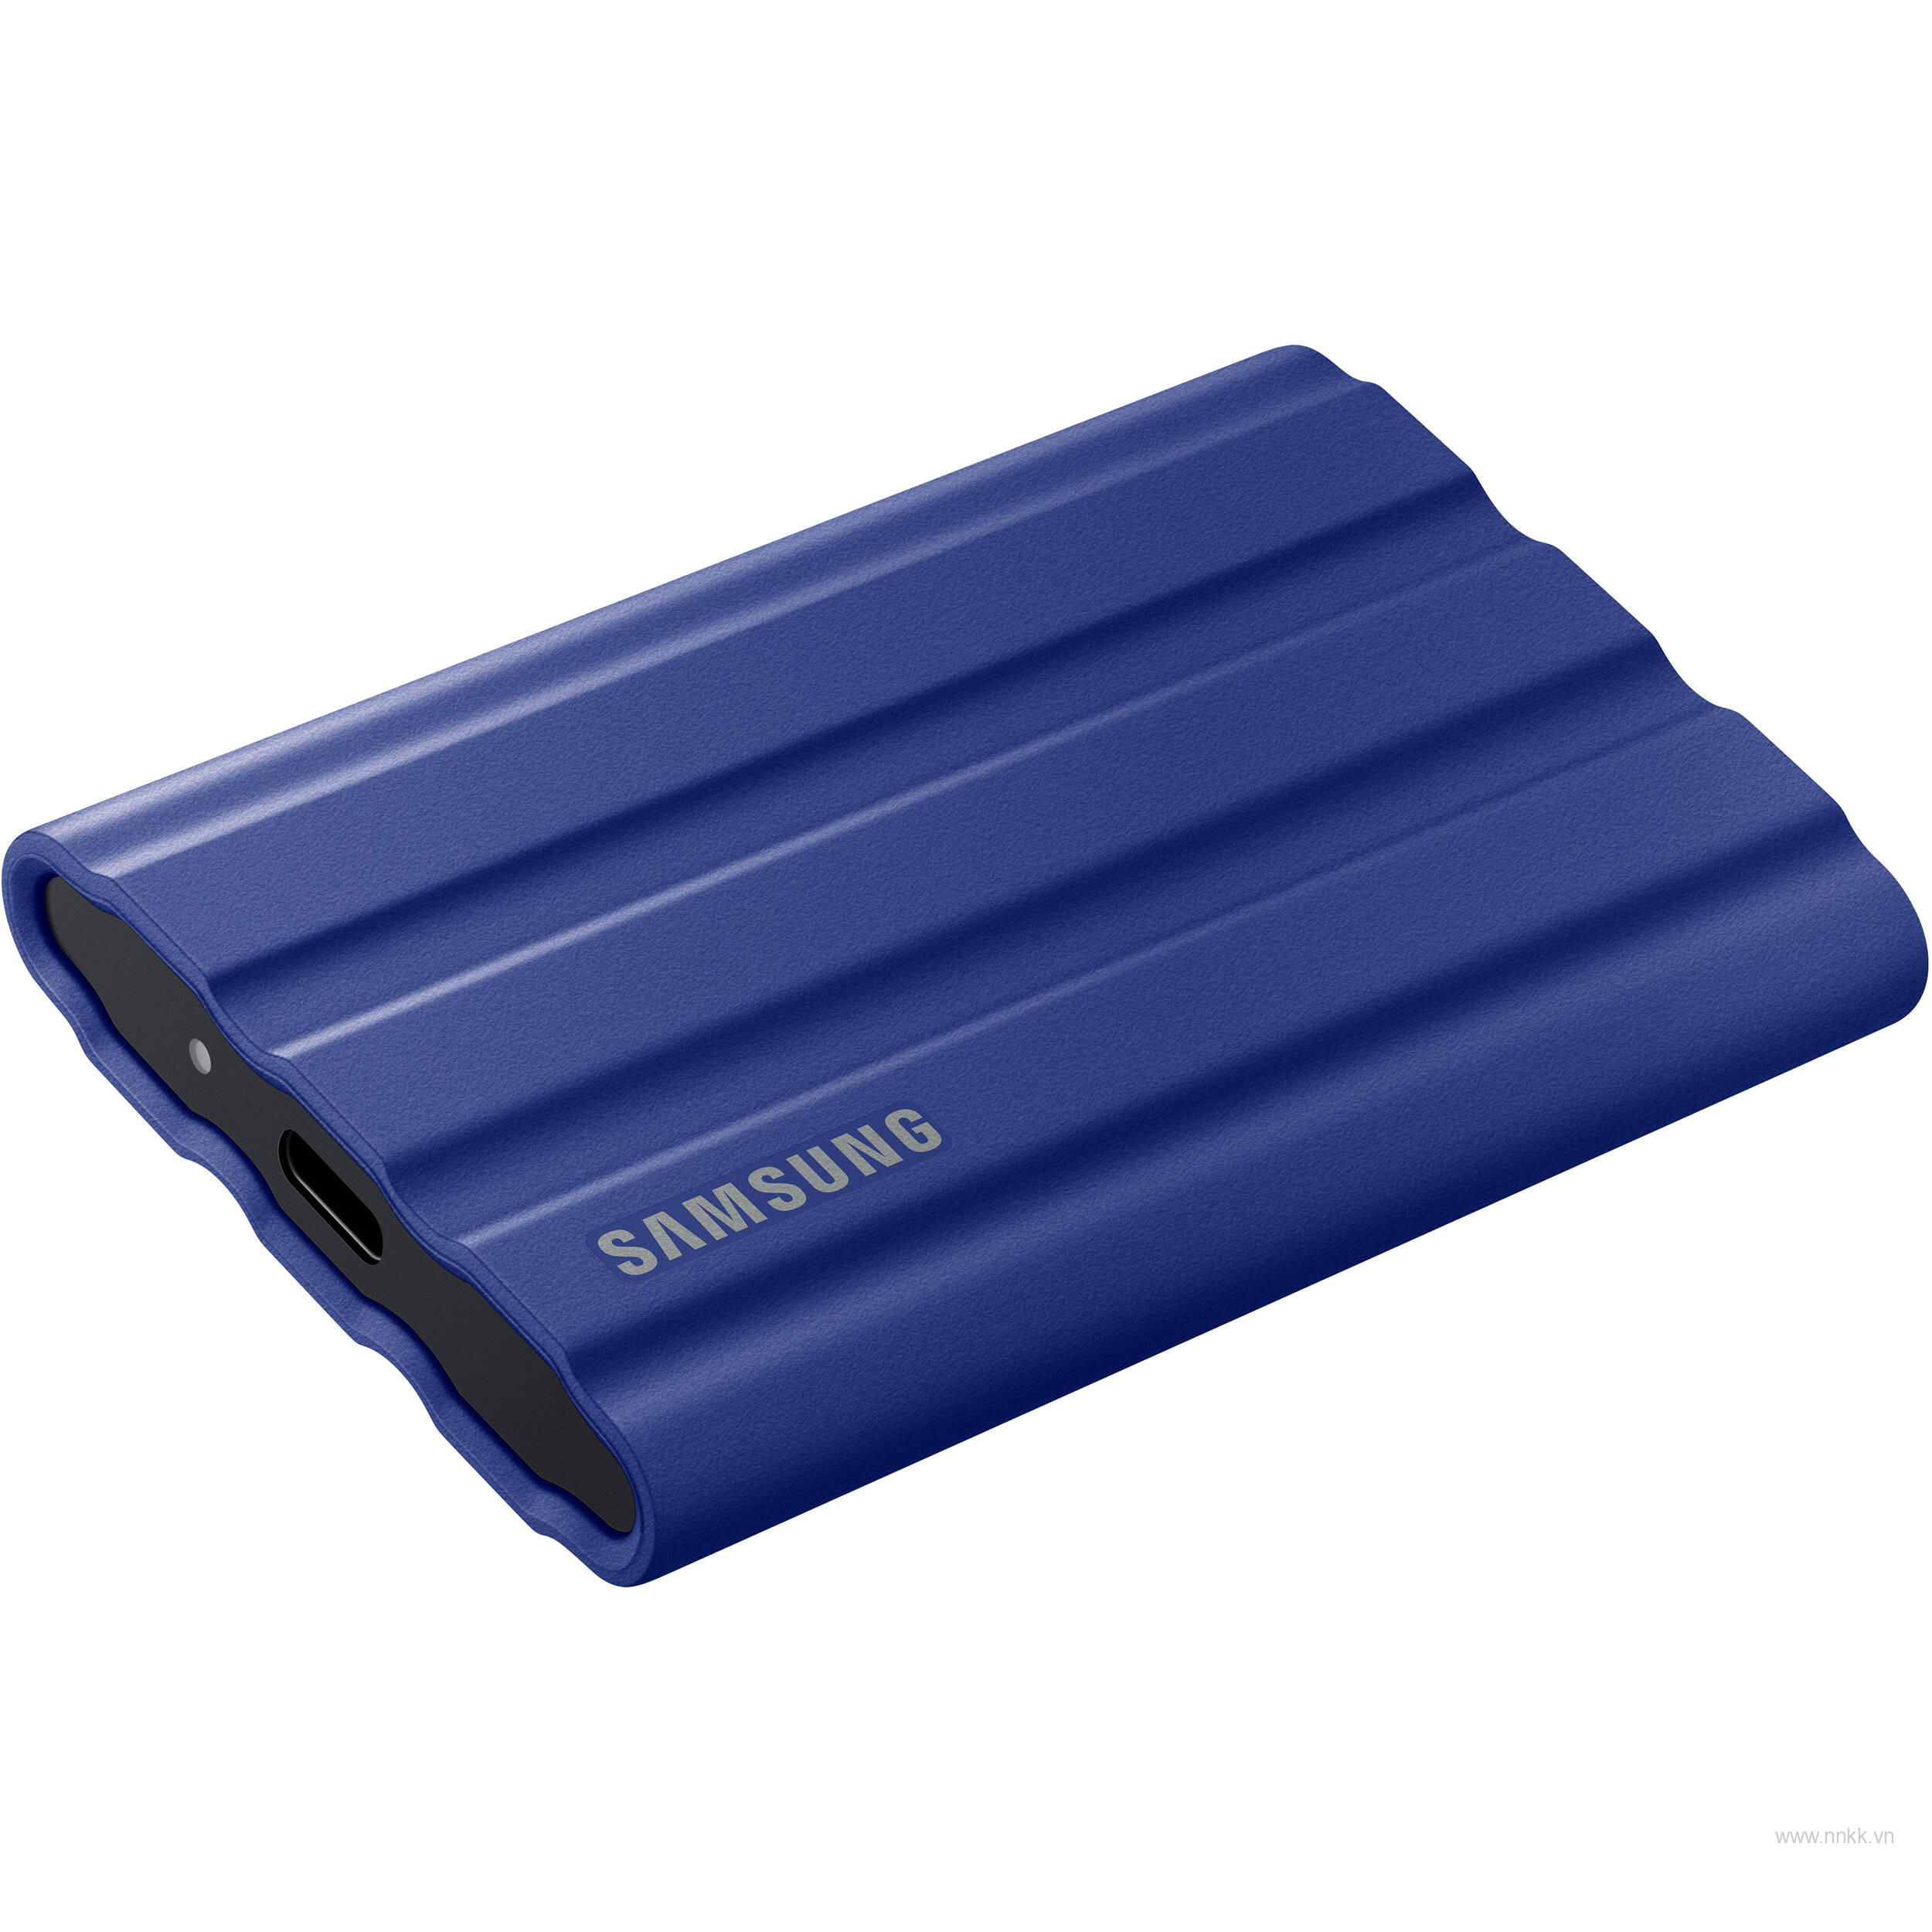 Ổ cứng di động SSD SamSung T7 Shield  2TB, Màu xanh 